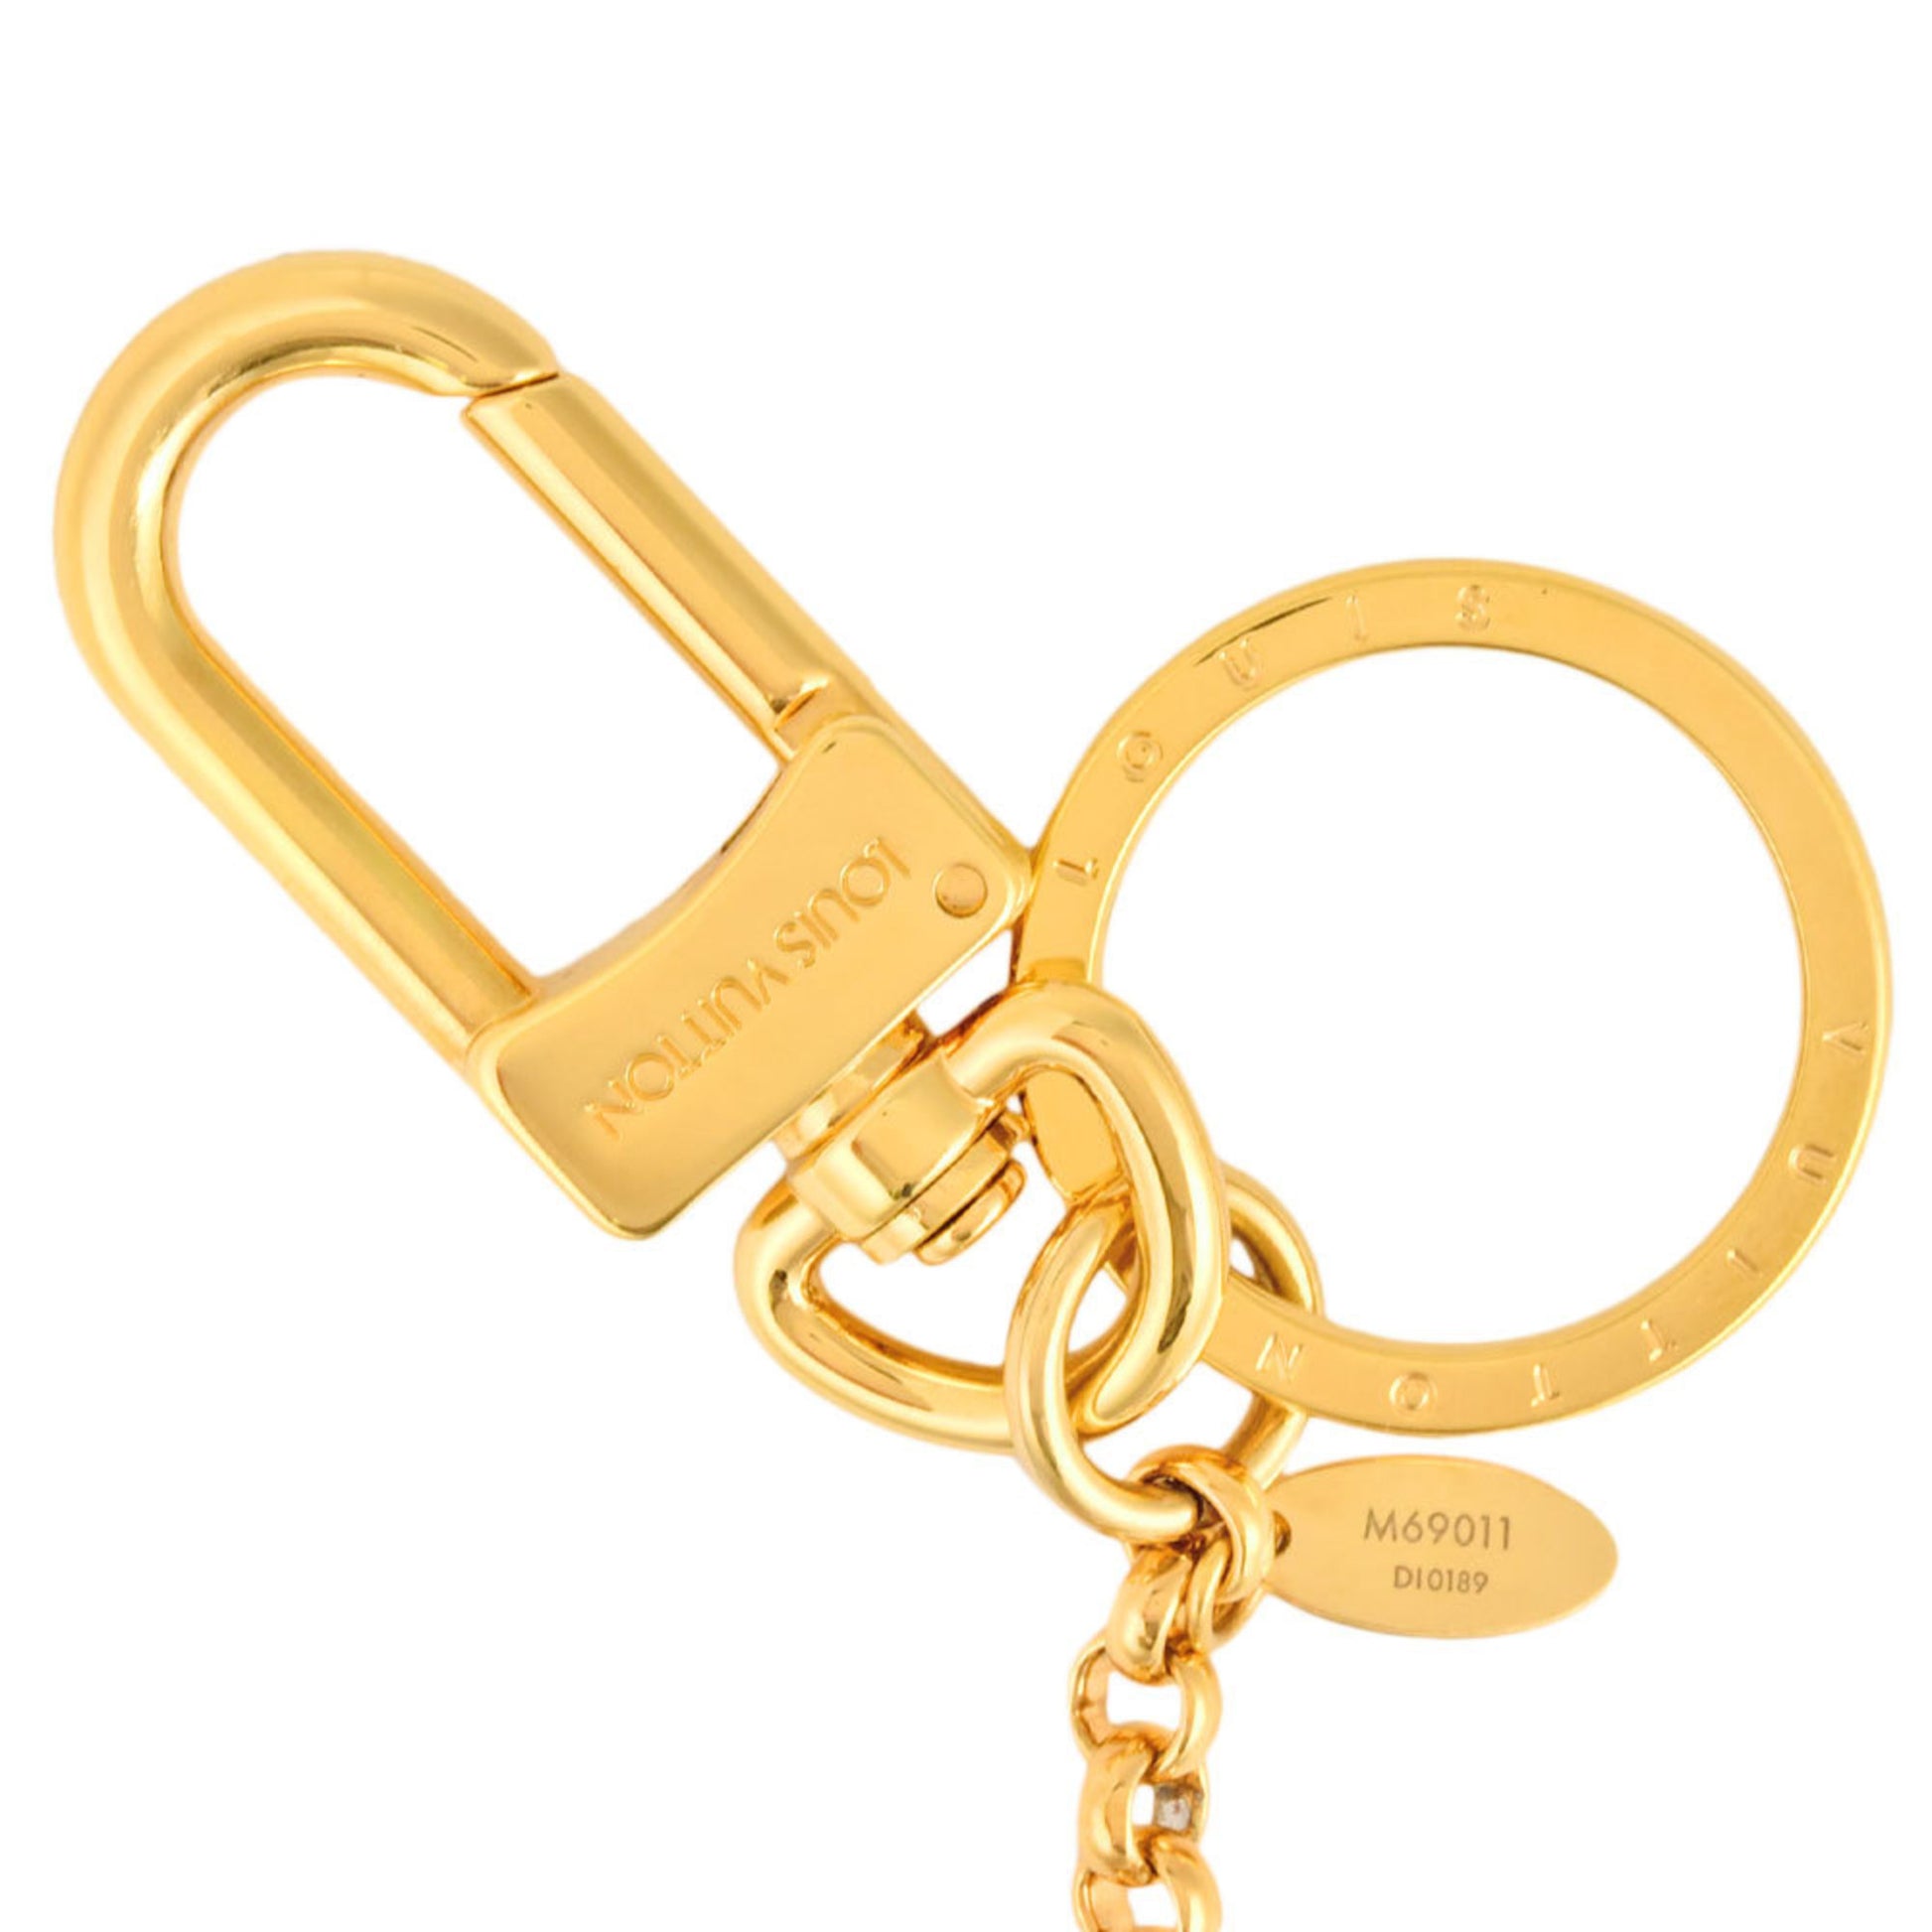 LOUIS VUITTON Anneau Cles Key Ring Gold Tone M62694 LV Auth th3536